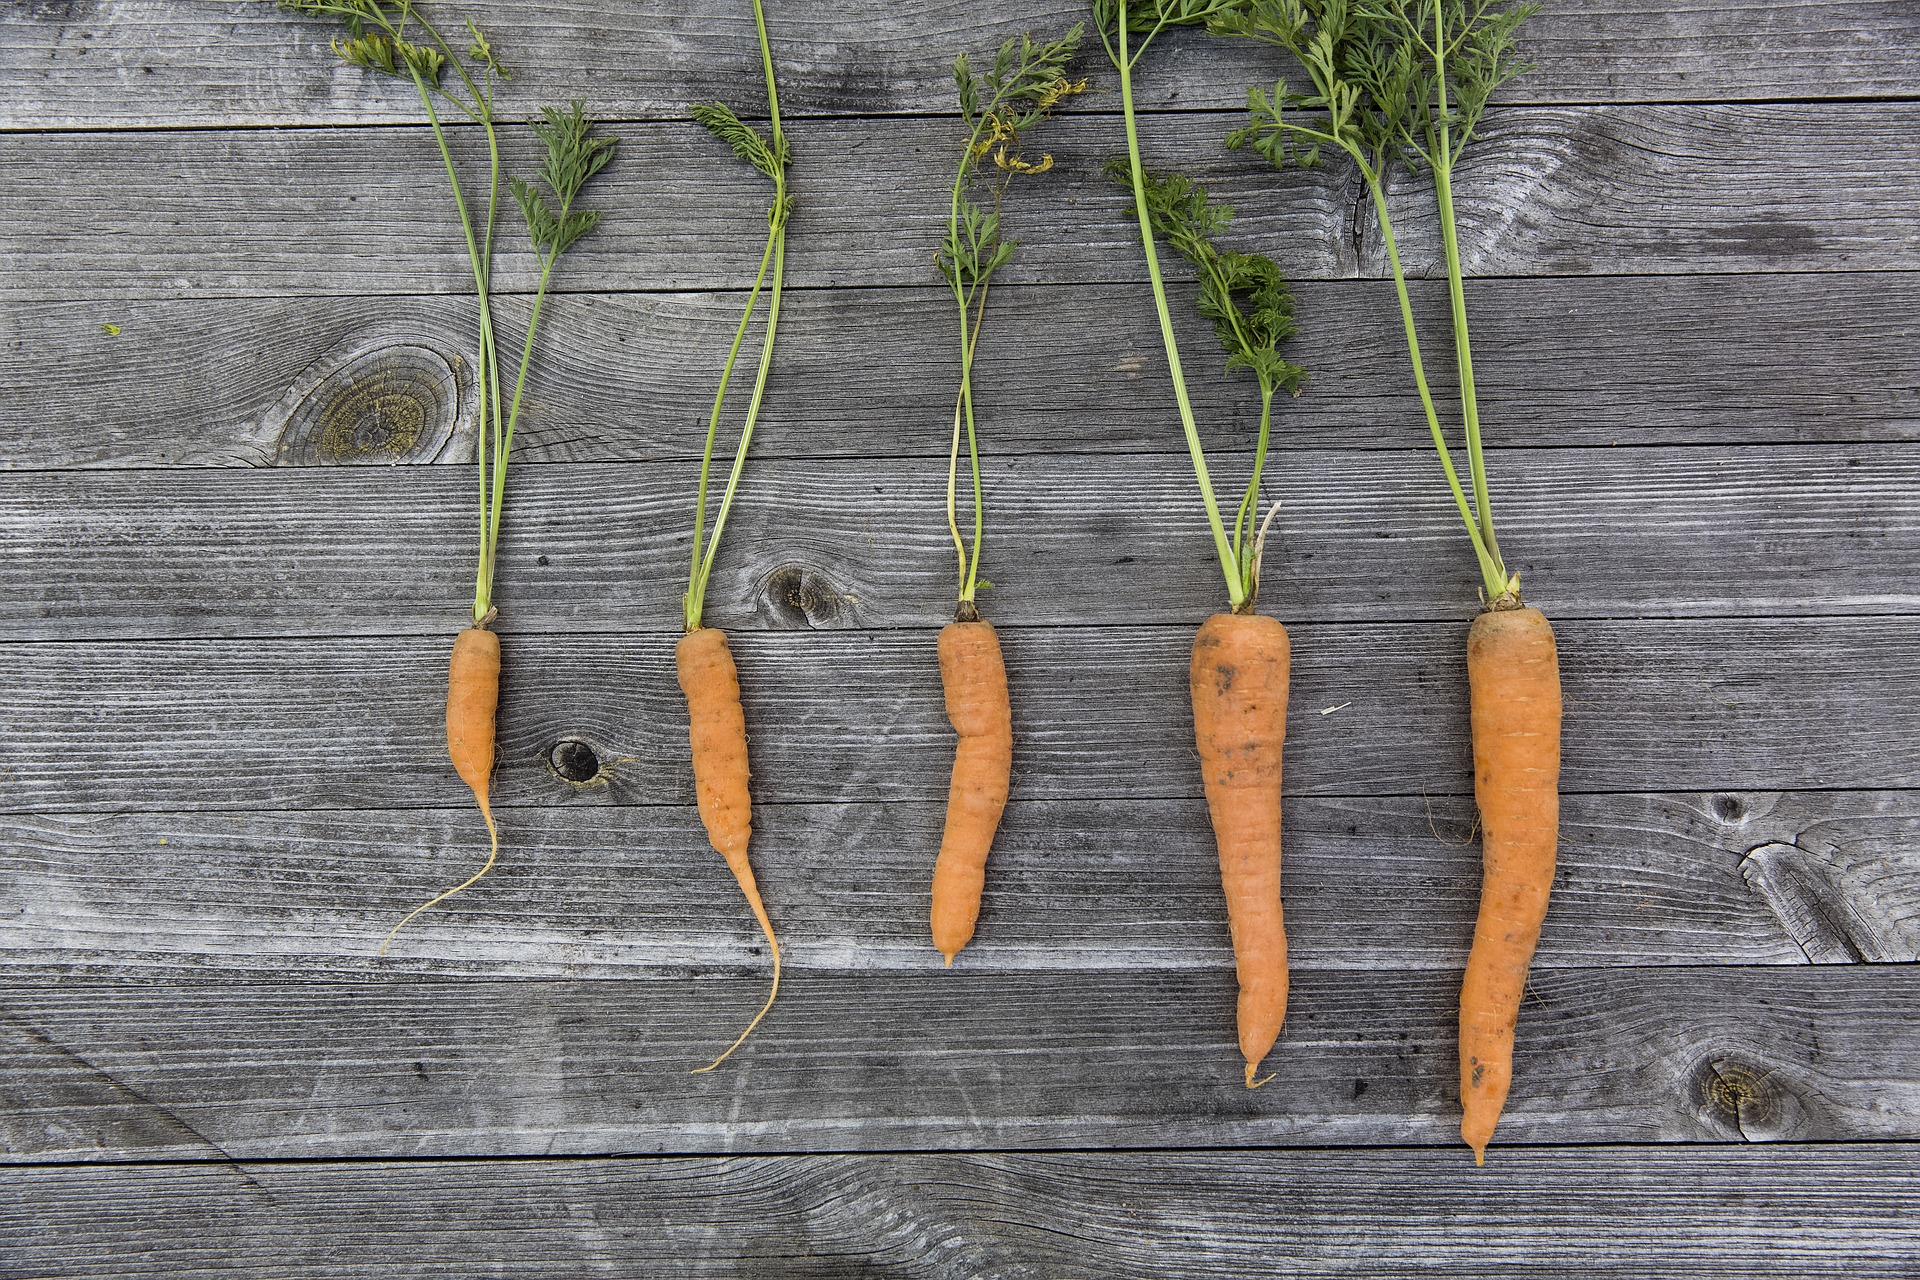 La zanahoria se ha convertido en uno de los vegetales más utilizados en repostería